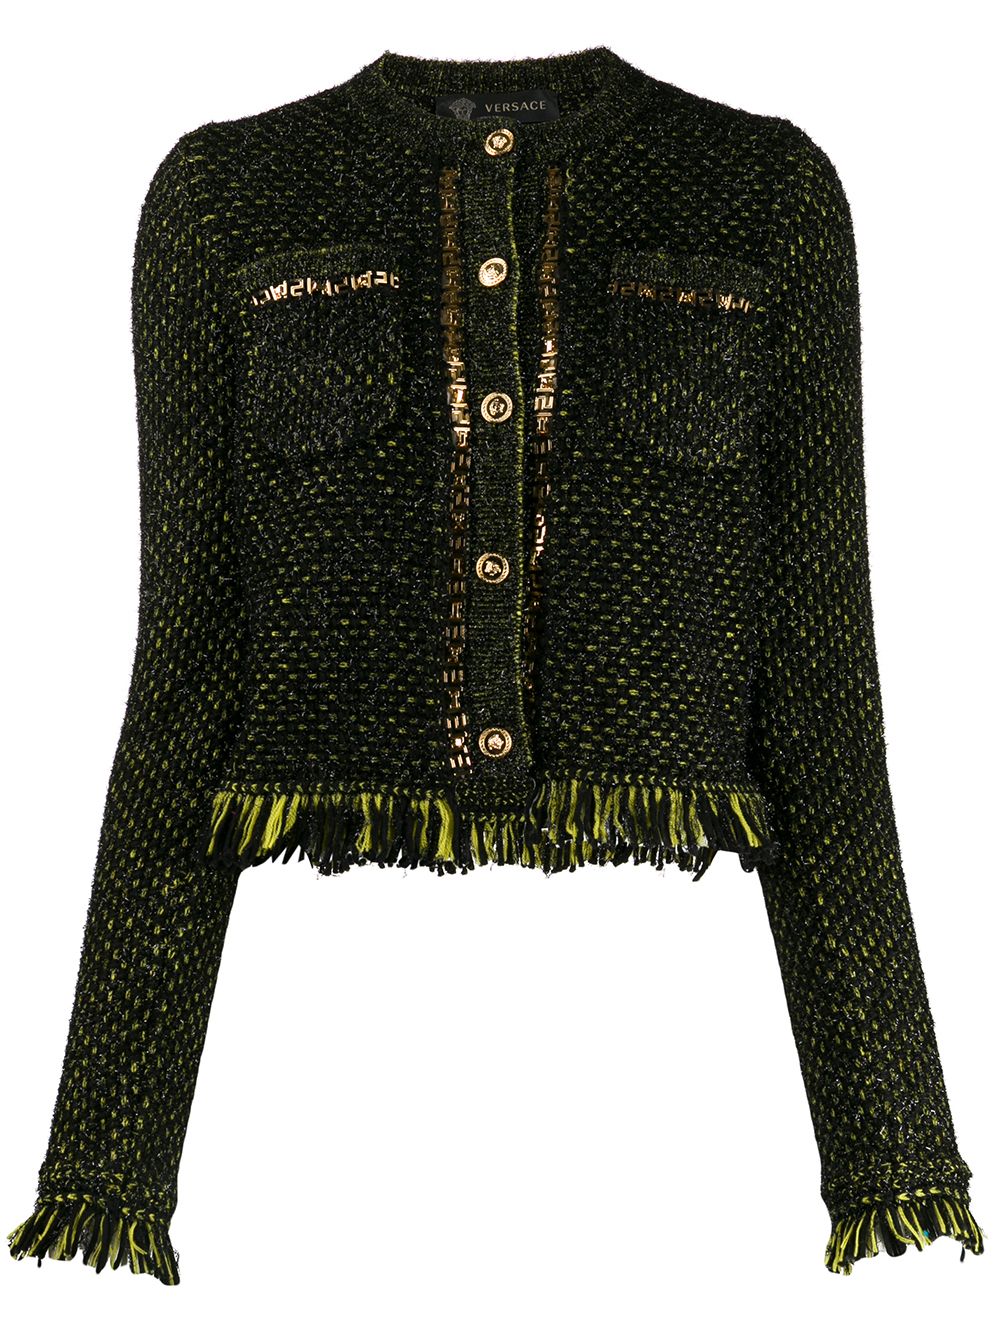 фото Versace трикотажный пиджак с бахромой